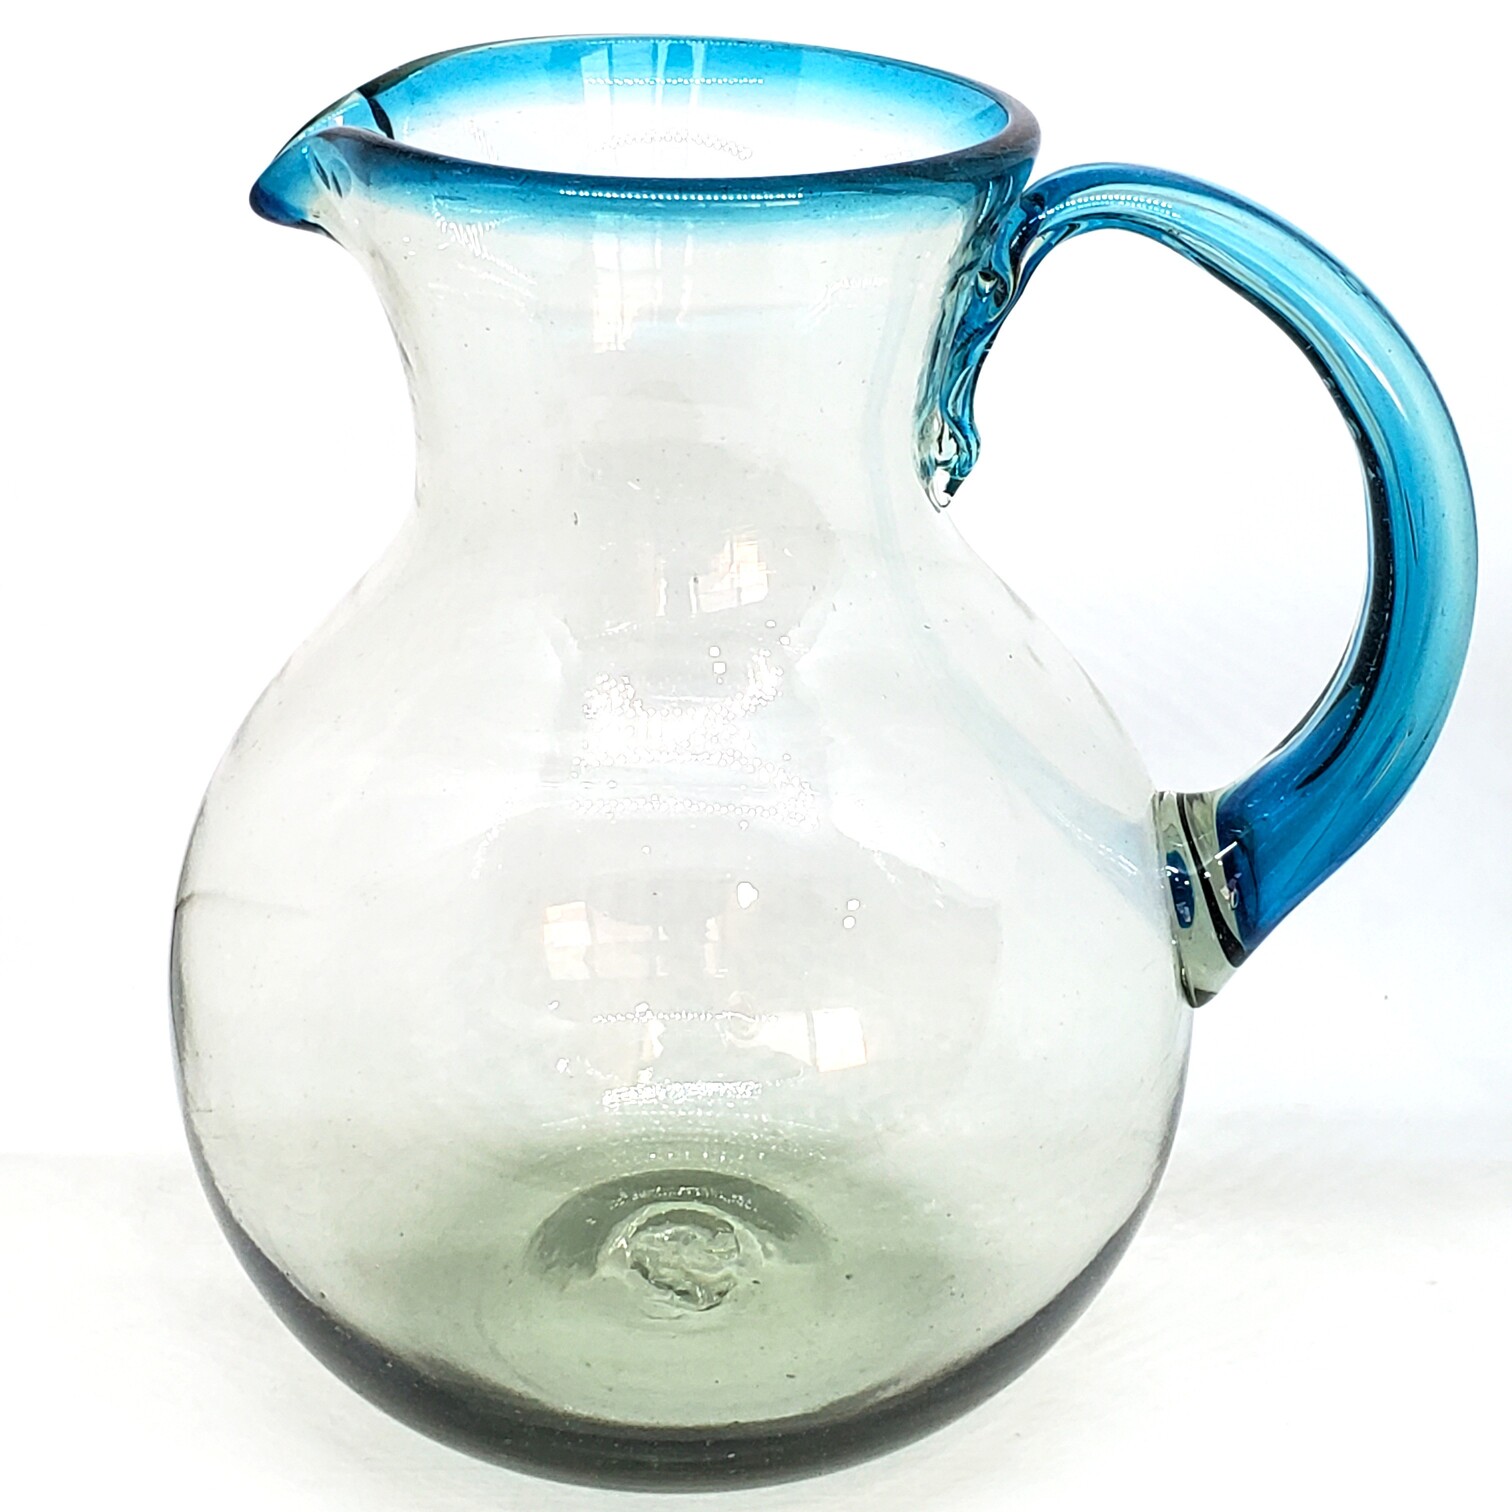 Borde de Color al Mayoreo / Jarra de vidrio soplado con borde azul aqua / Ésta moderna jarra viene decorada con un borde en azul aqua.